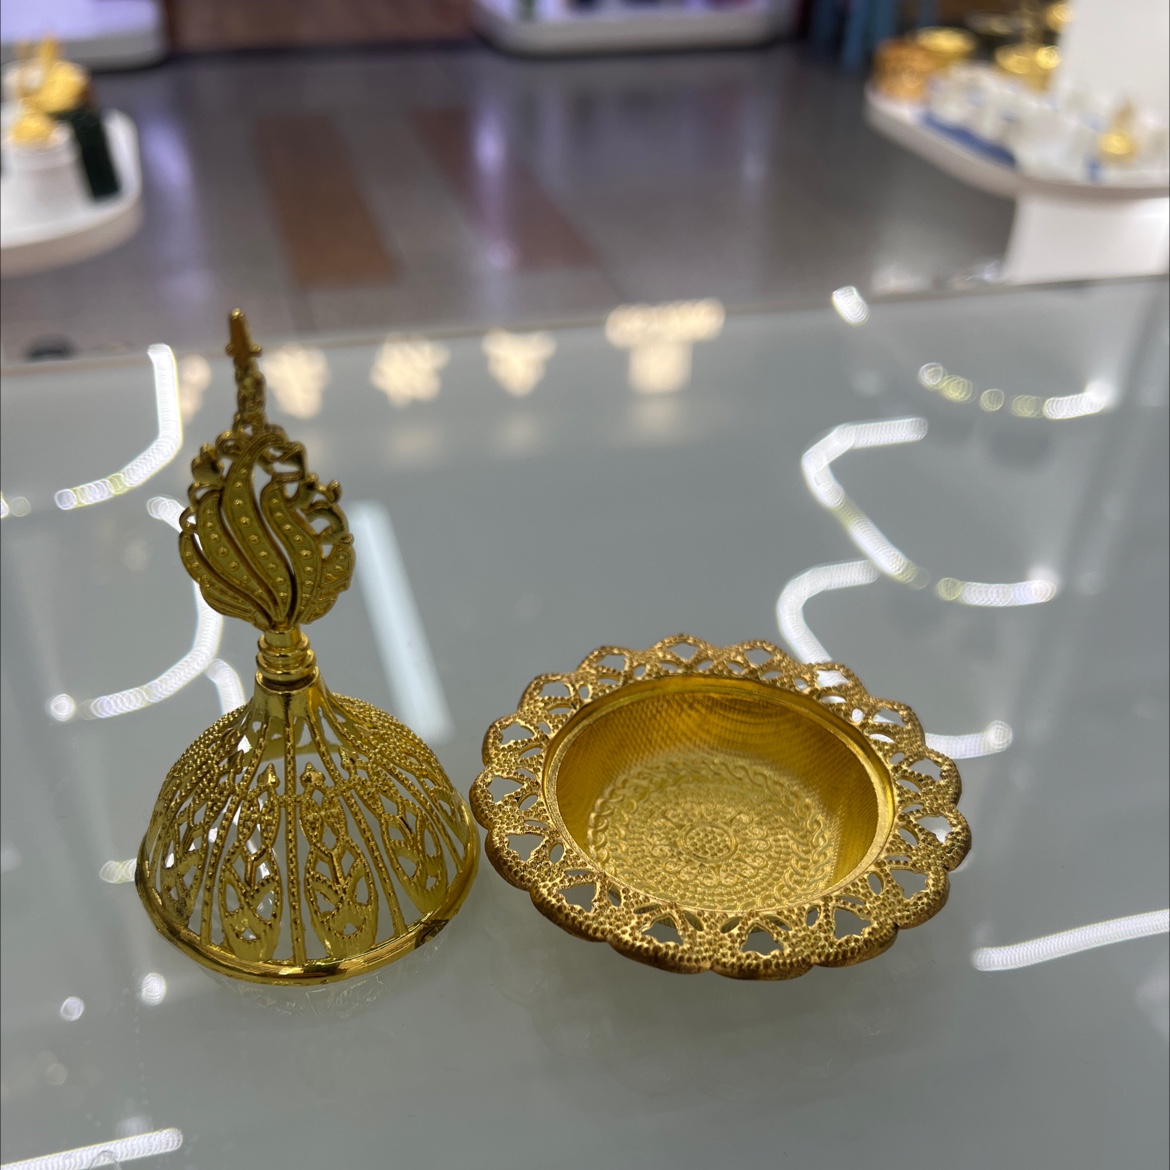 锌合金镂空迷你中东香炉摆件锌合金烛台摆件产品图